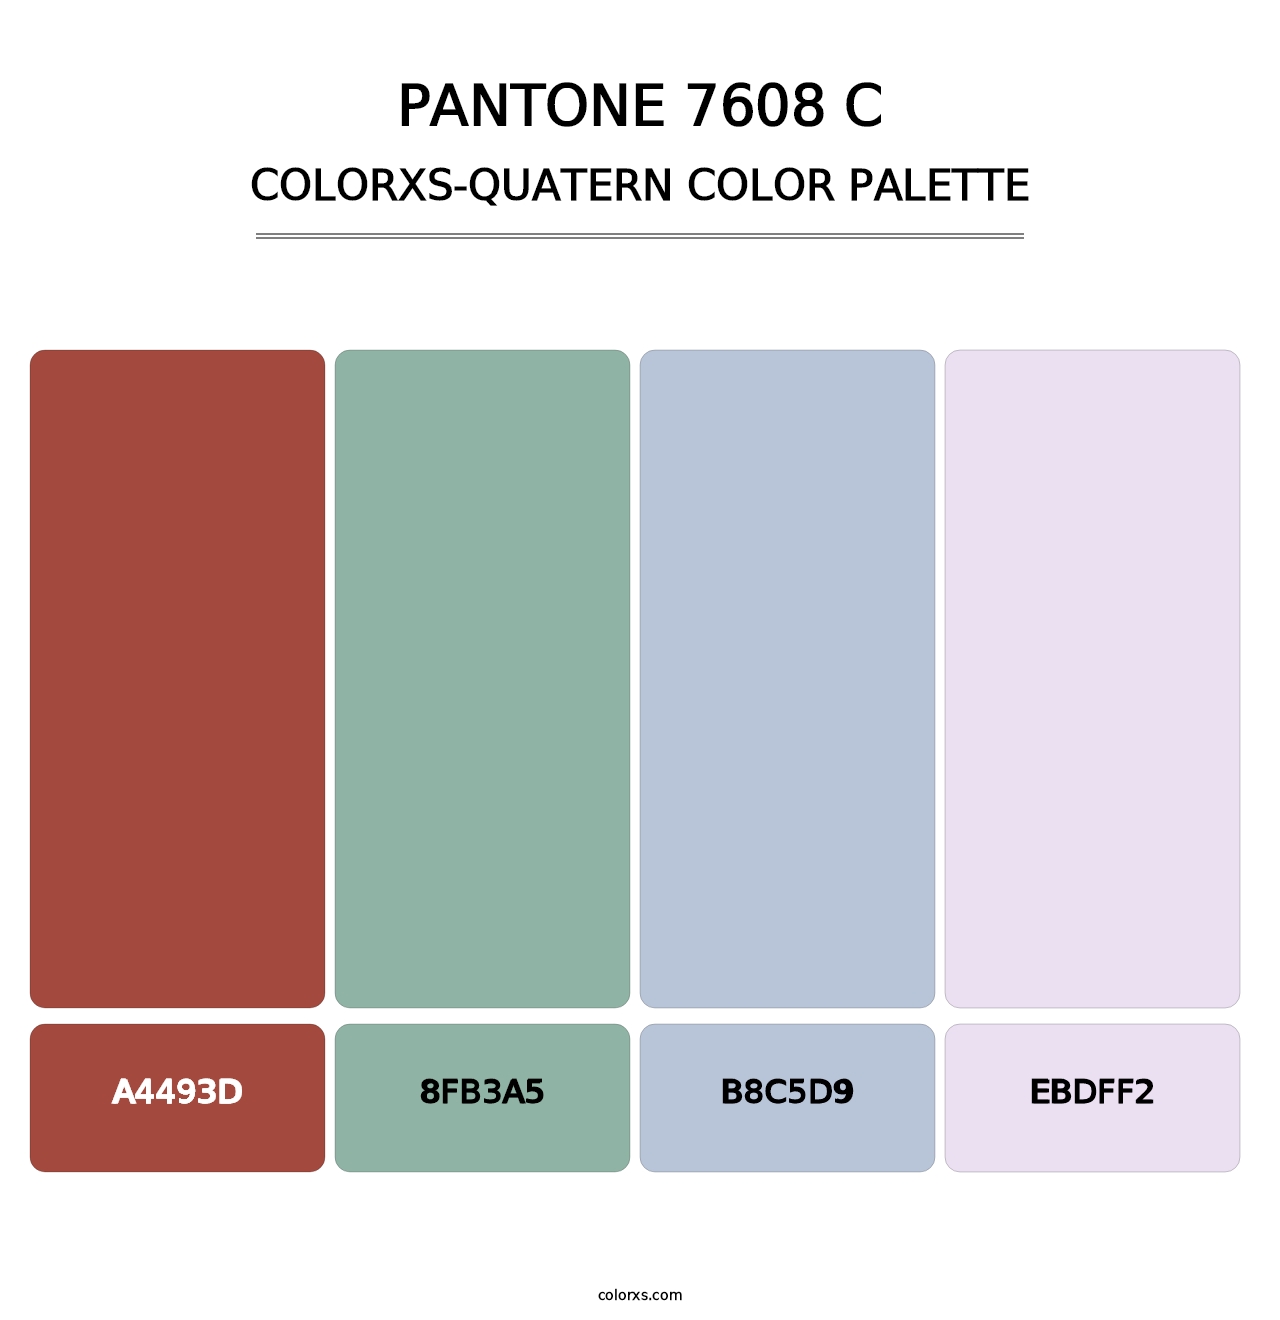 PANTONE 7608 C - Colorxs Quatern Palette